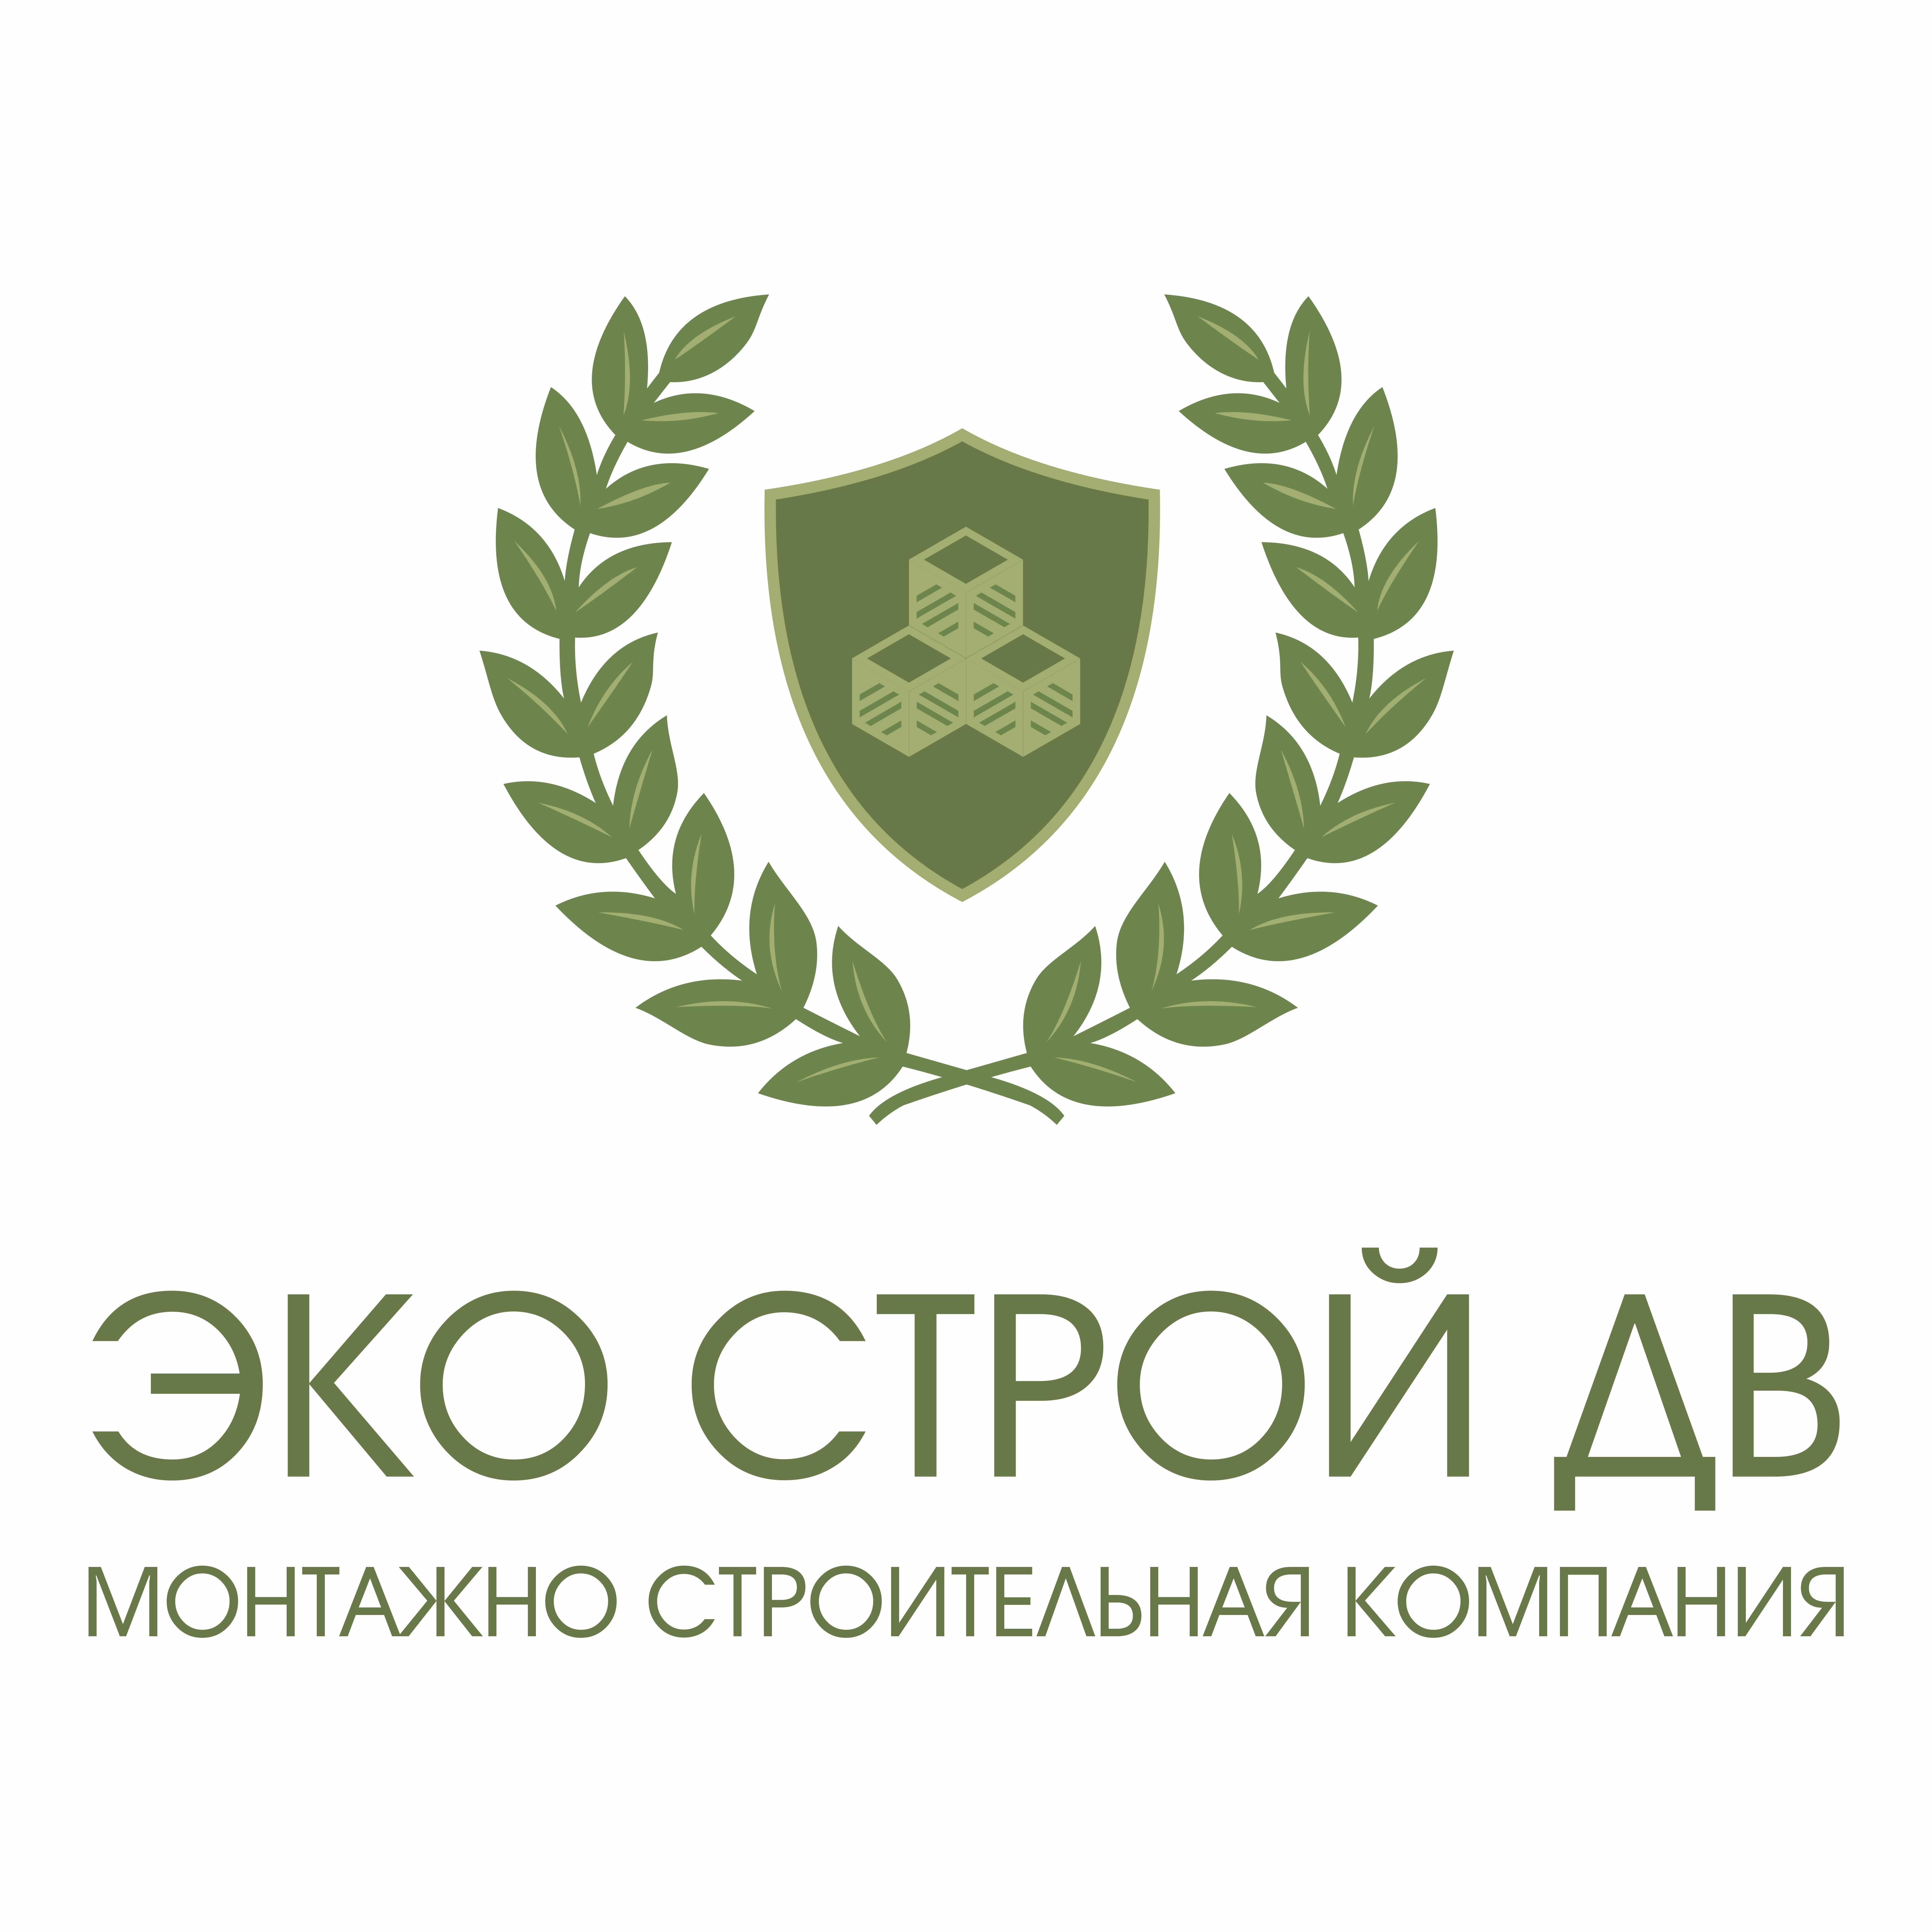 Экострой отзывы. Экострой логотип. Логотип фирмы Eko-stroy. Дв Строй. Eco Хабаровск.